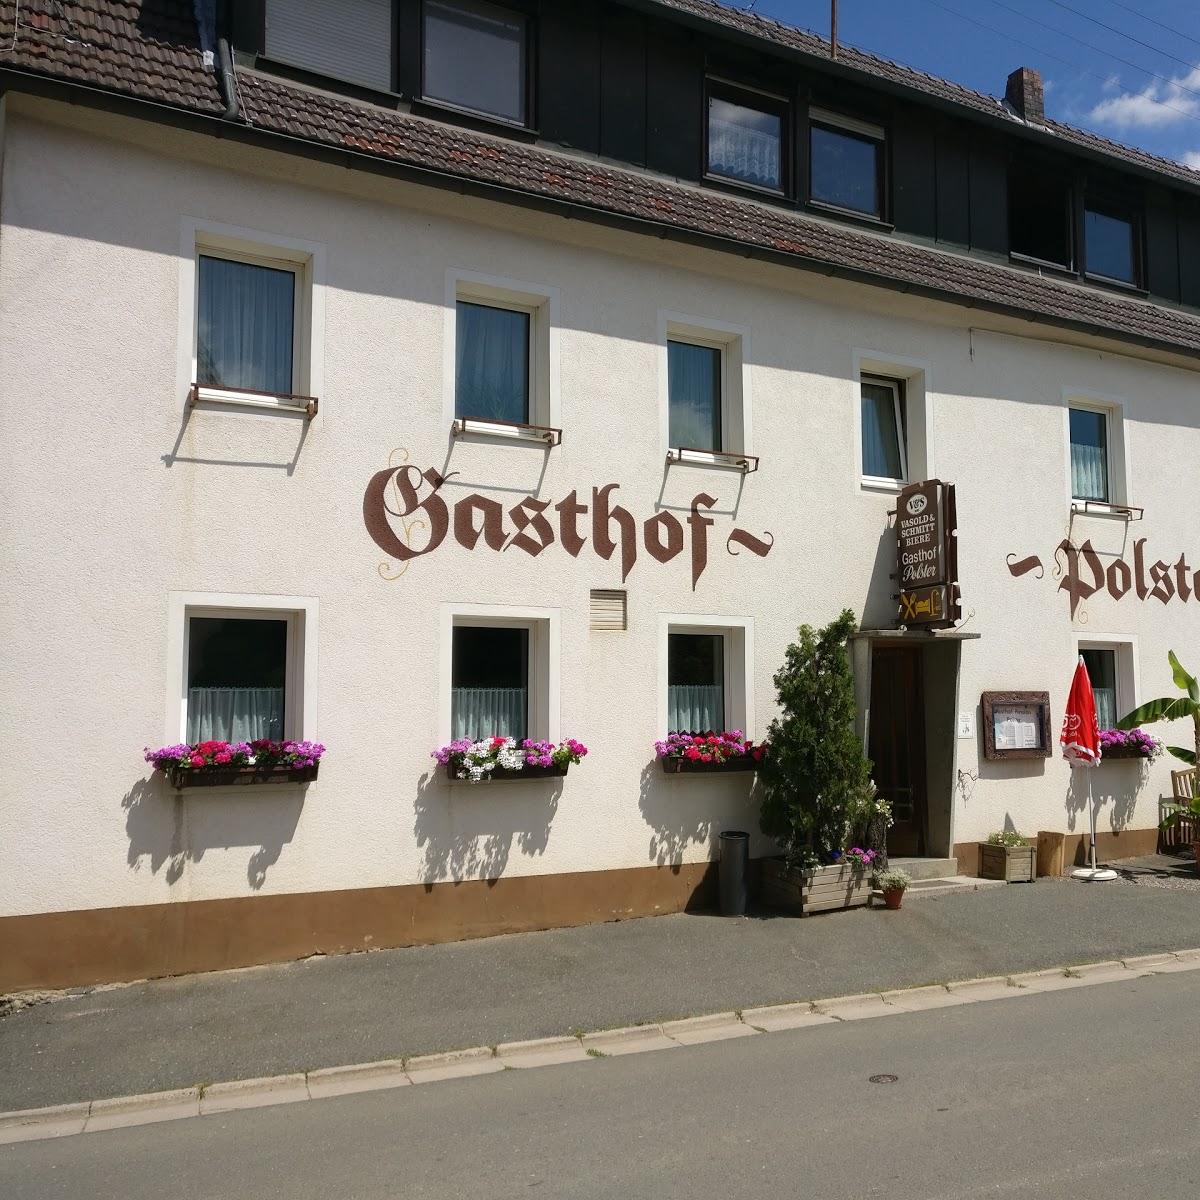 Restaurant "Polster Gasthof Inh. Ziegler A." in Egloffstein